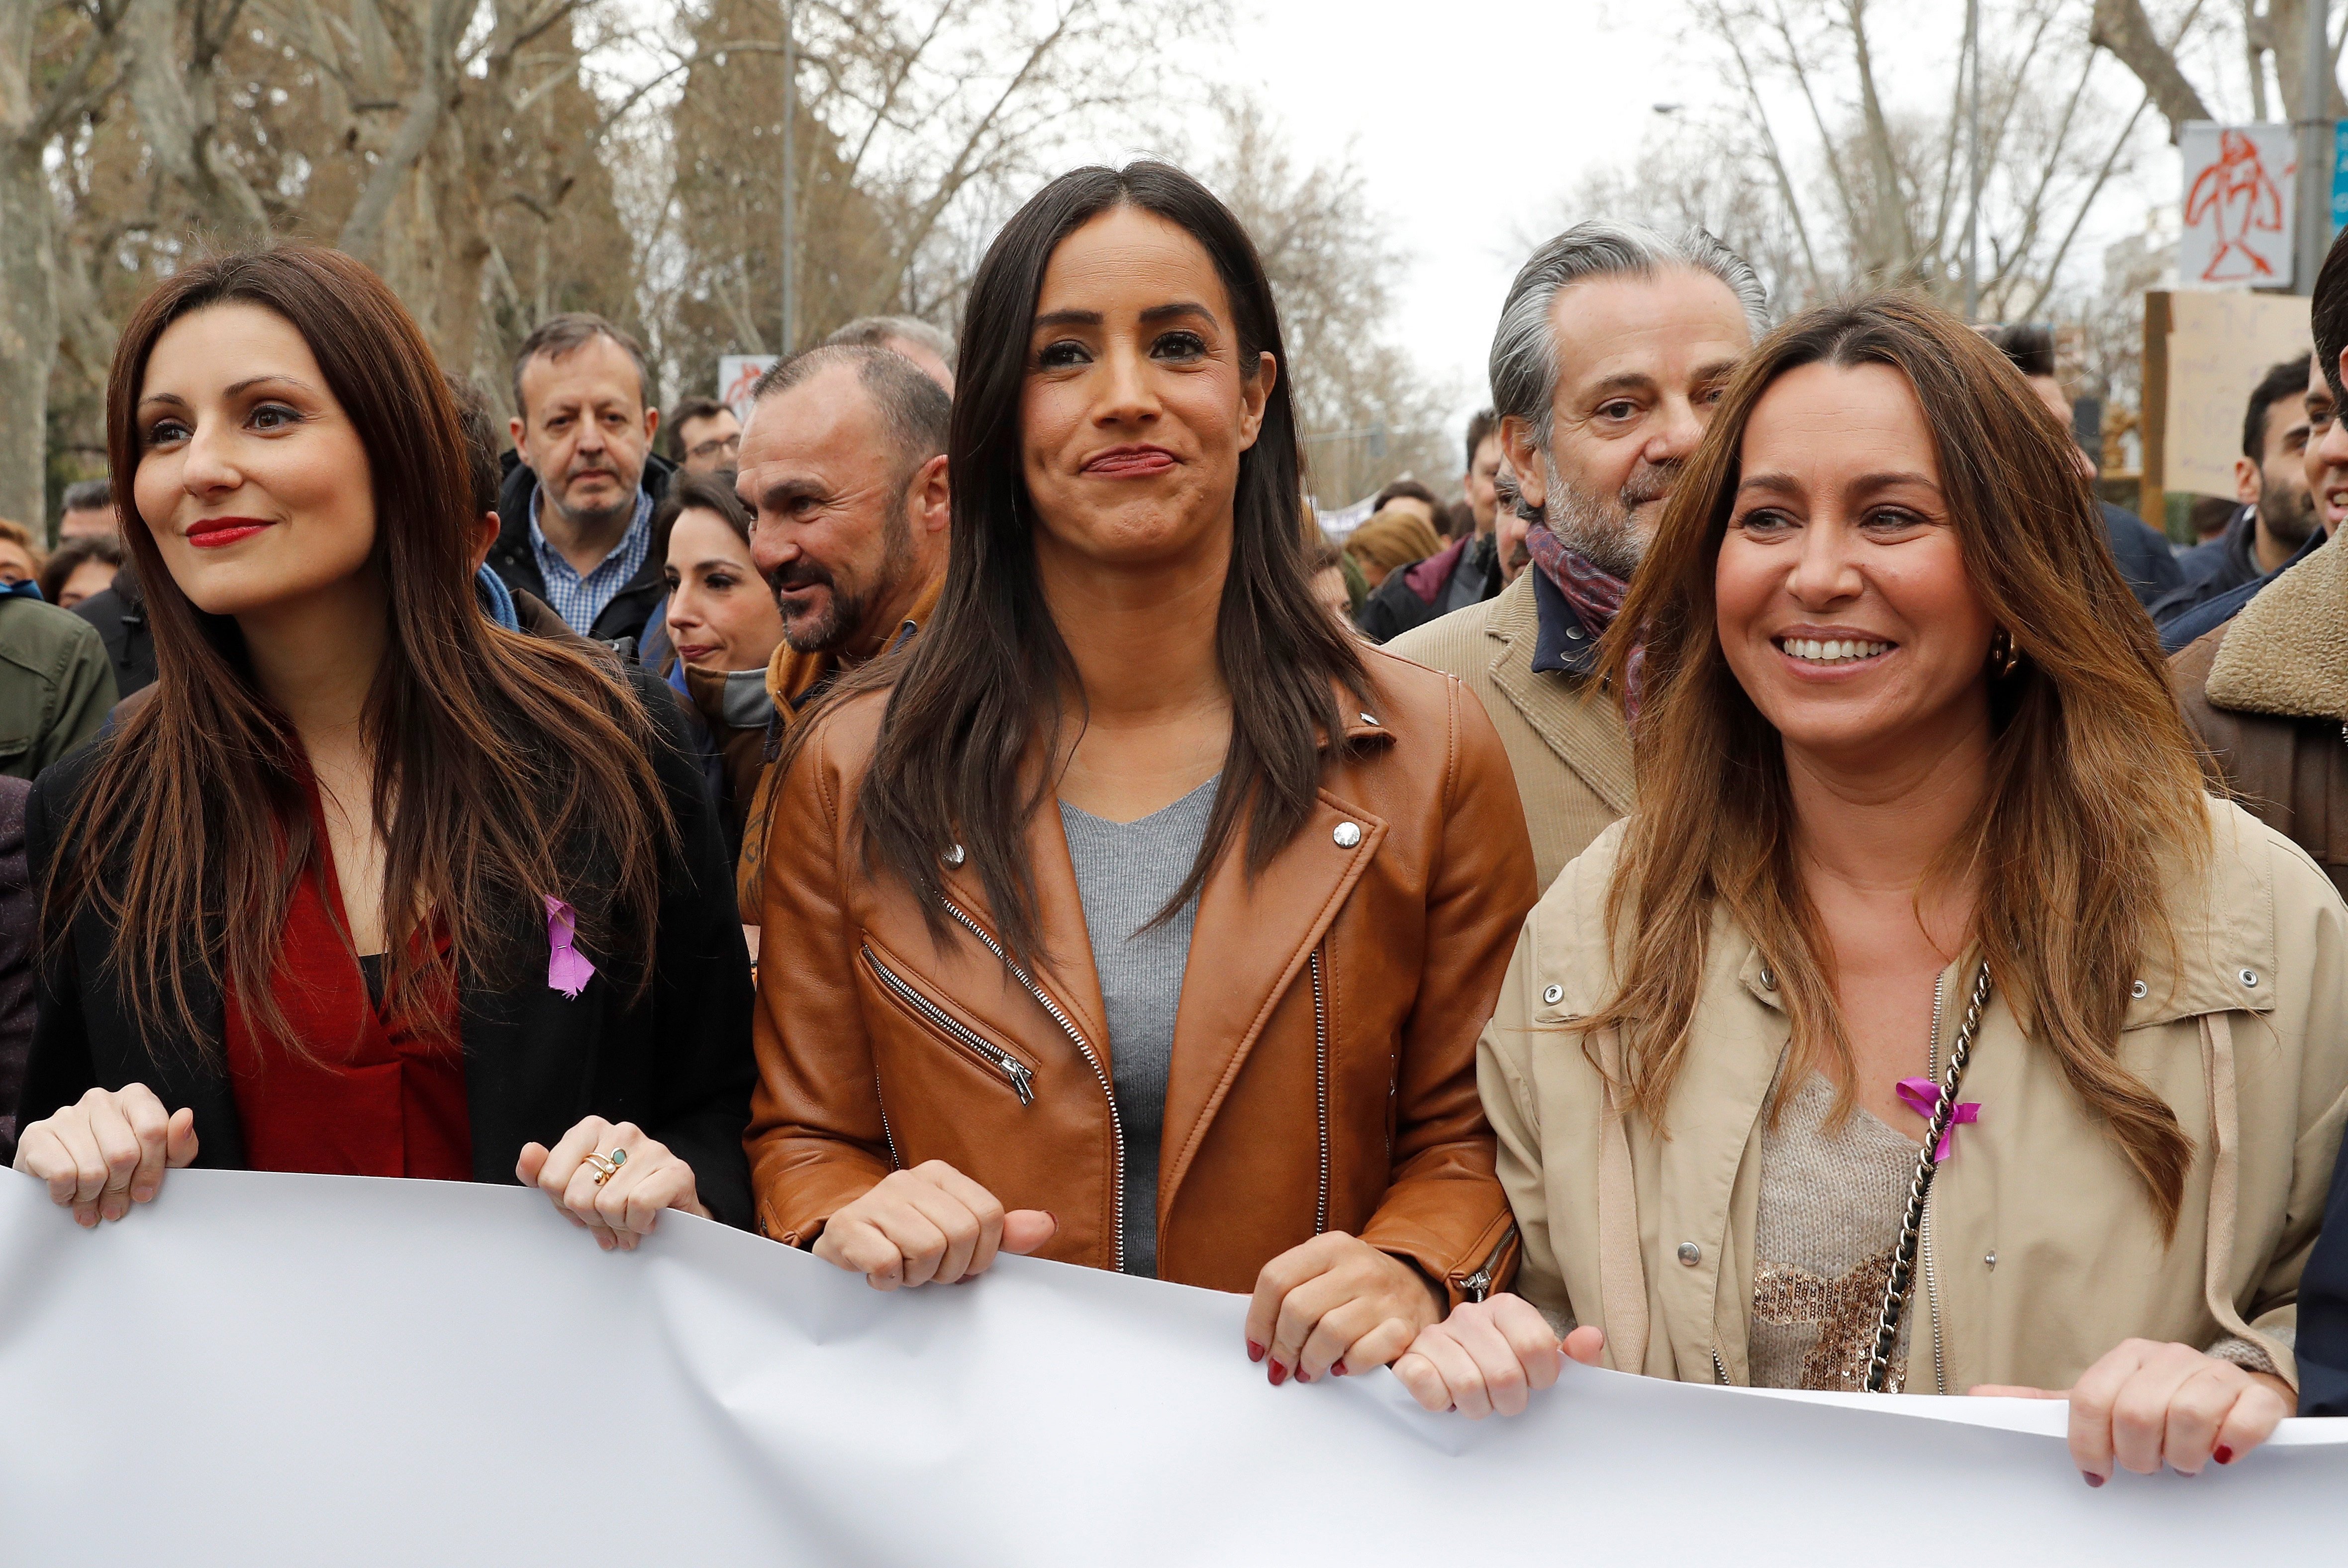 VÍDEO | Roldán marxa a Madrid i les feministes l'escridassen: "Fora feixistes!"